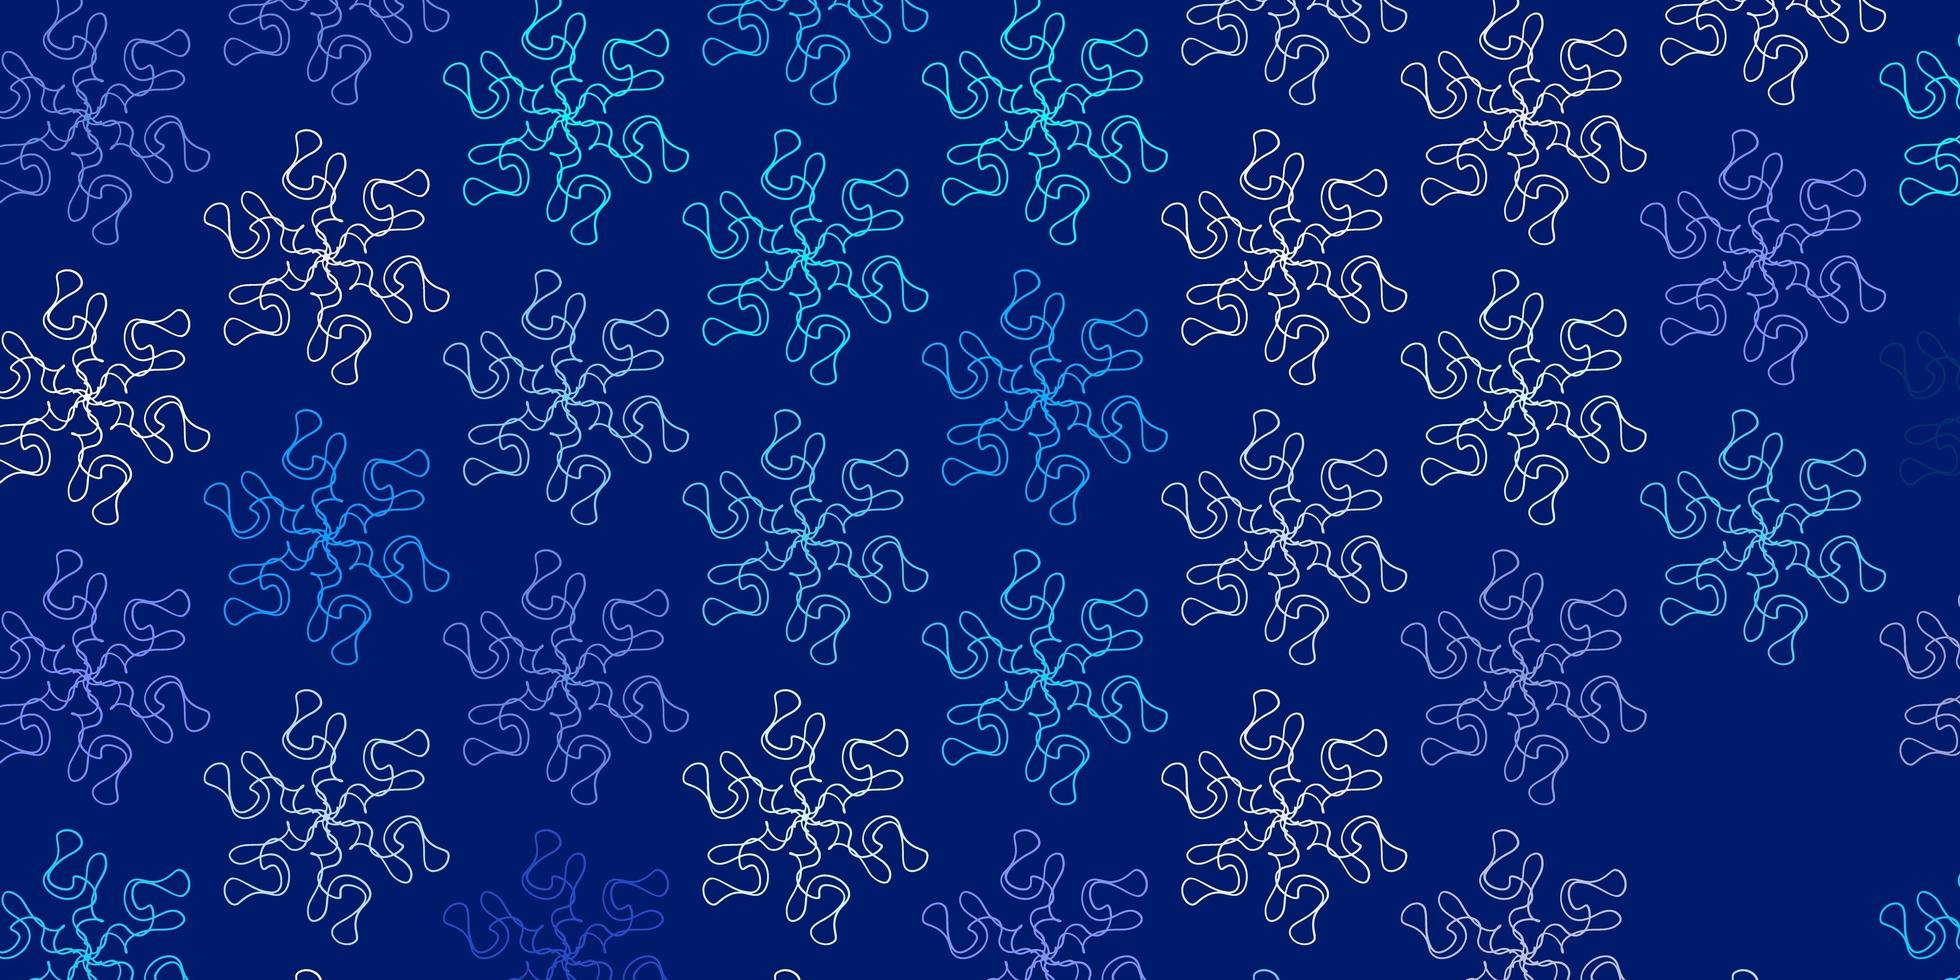 padrão de doodle de vetor azul claro com flores.